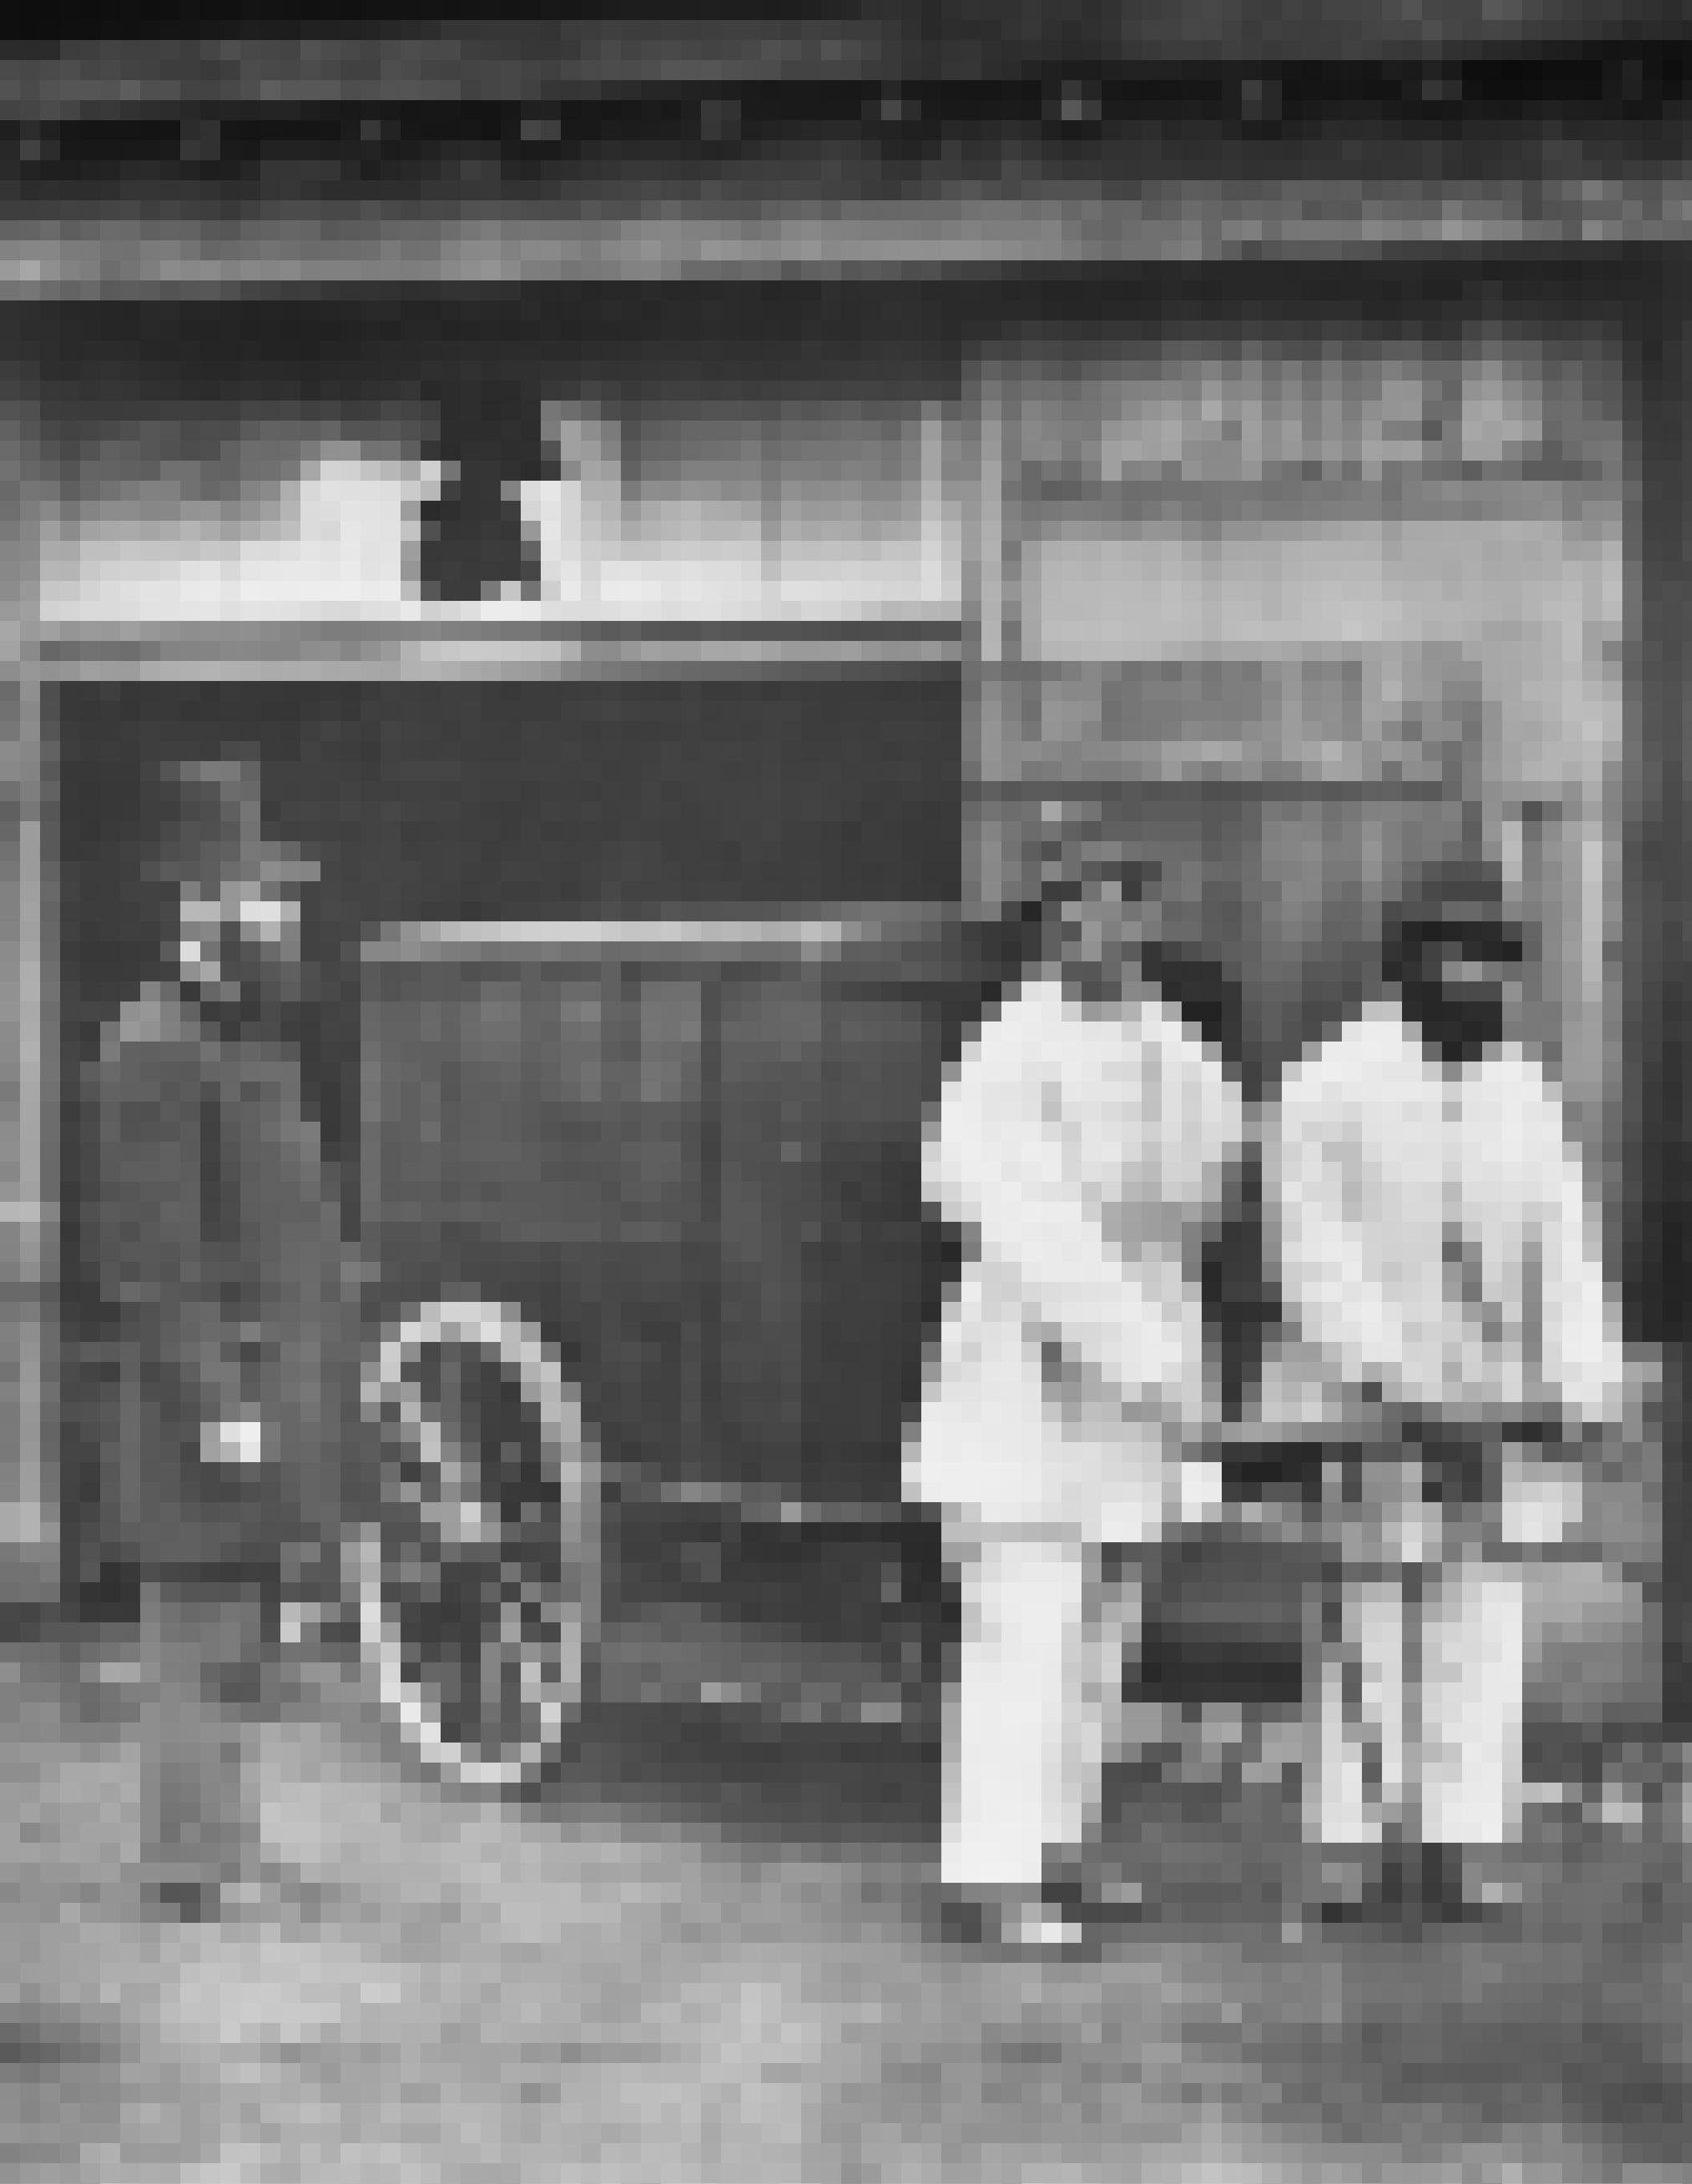 Historisches Foto aus dem Jahr 1877; zwei Männer in weißer Kleidung ziehen einen Handkarren mit Desinfektionsmittel durch die Straßen Londons. Ein bärtiger Mann mit Zylinder und dunkler Kleidung steht daneben.